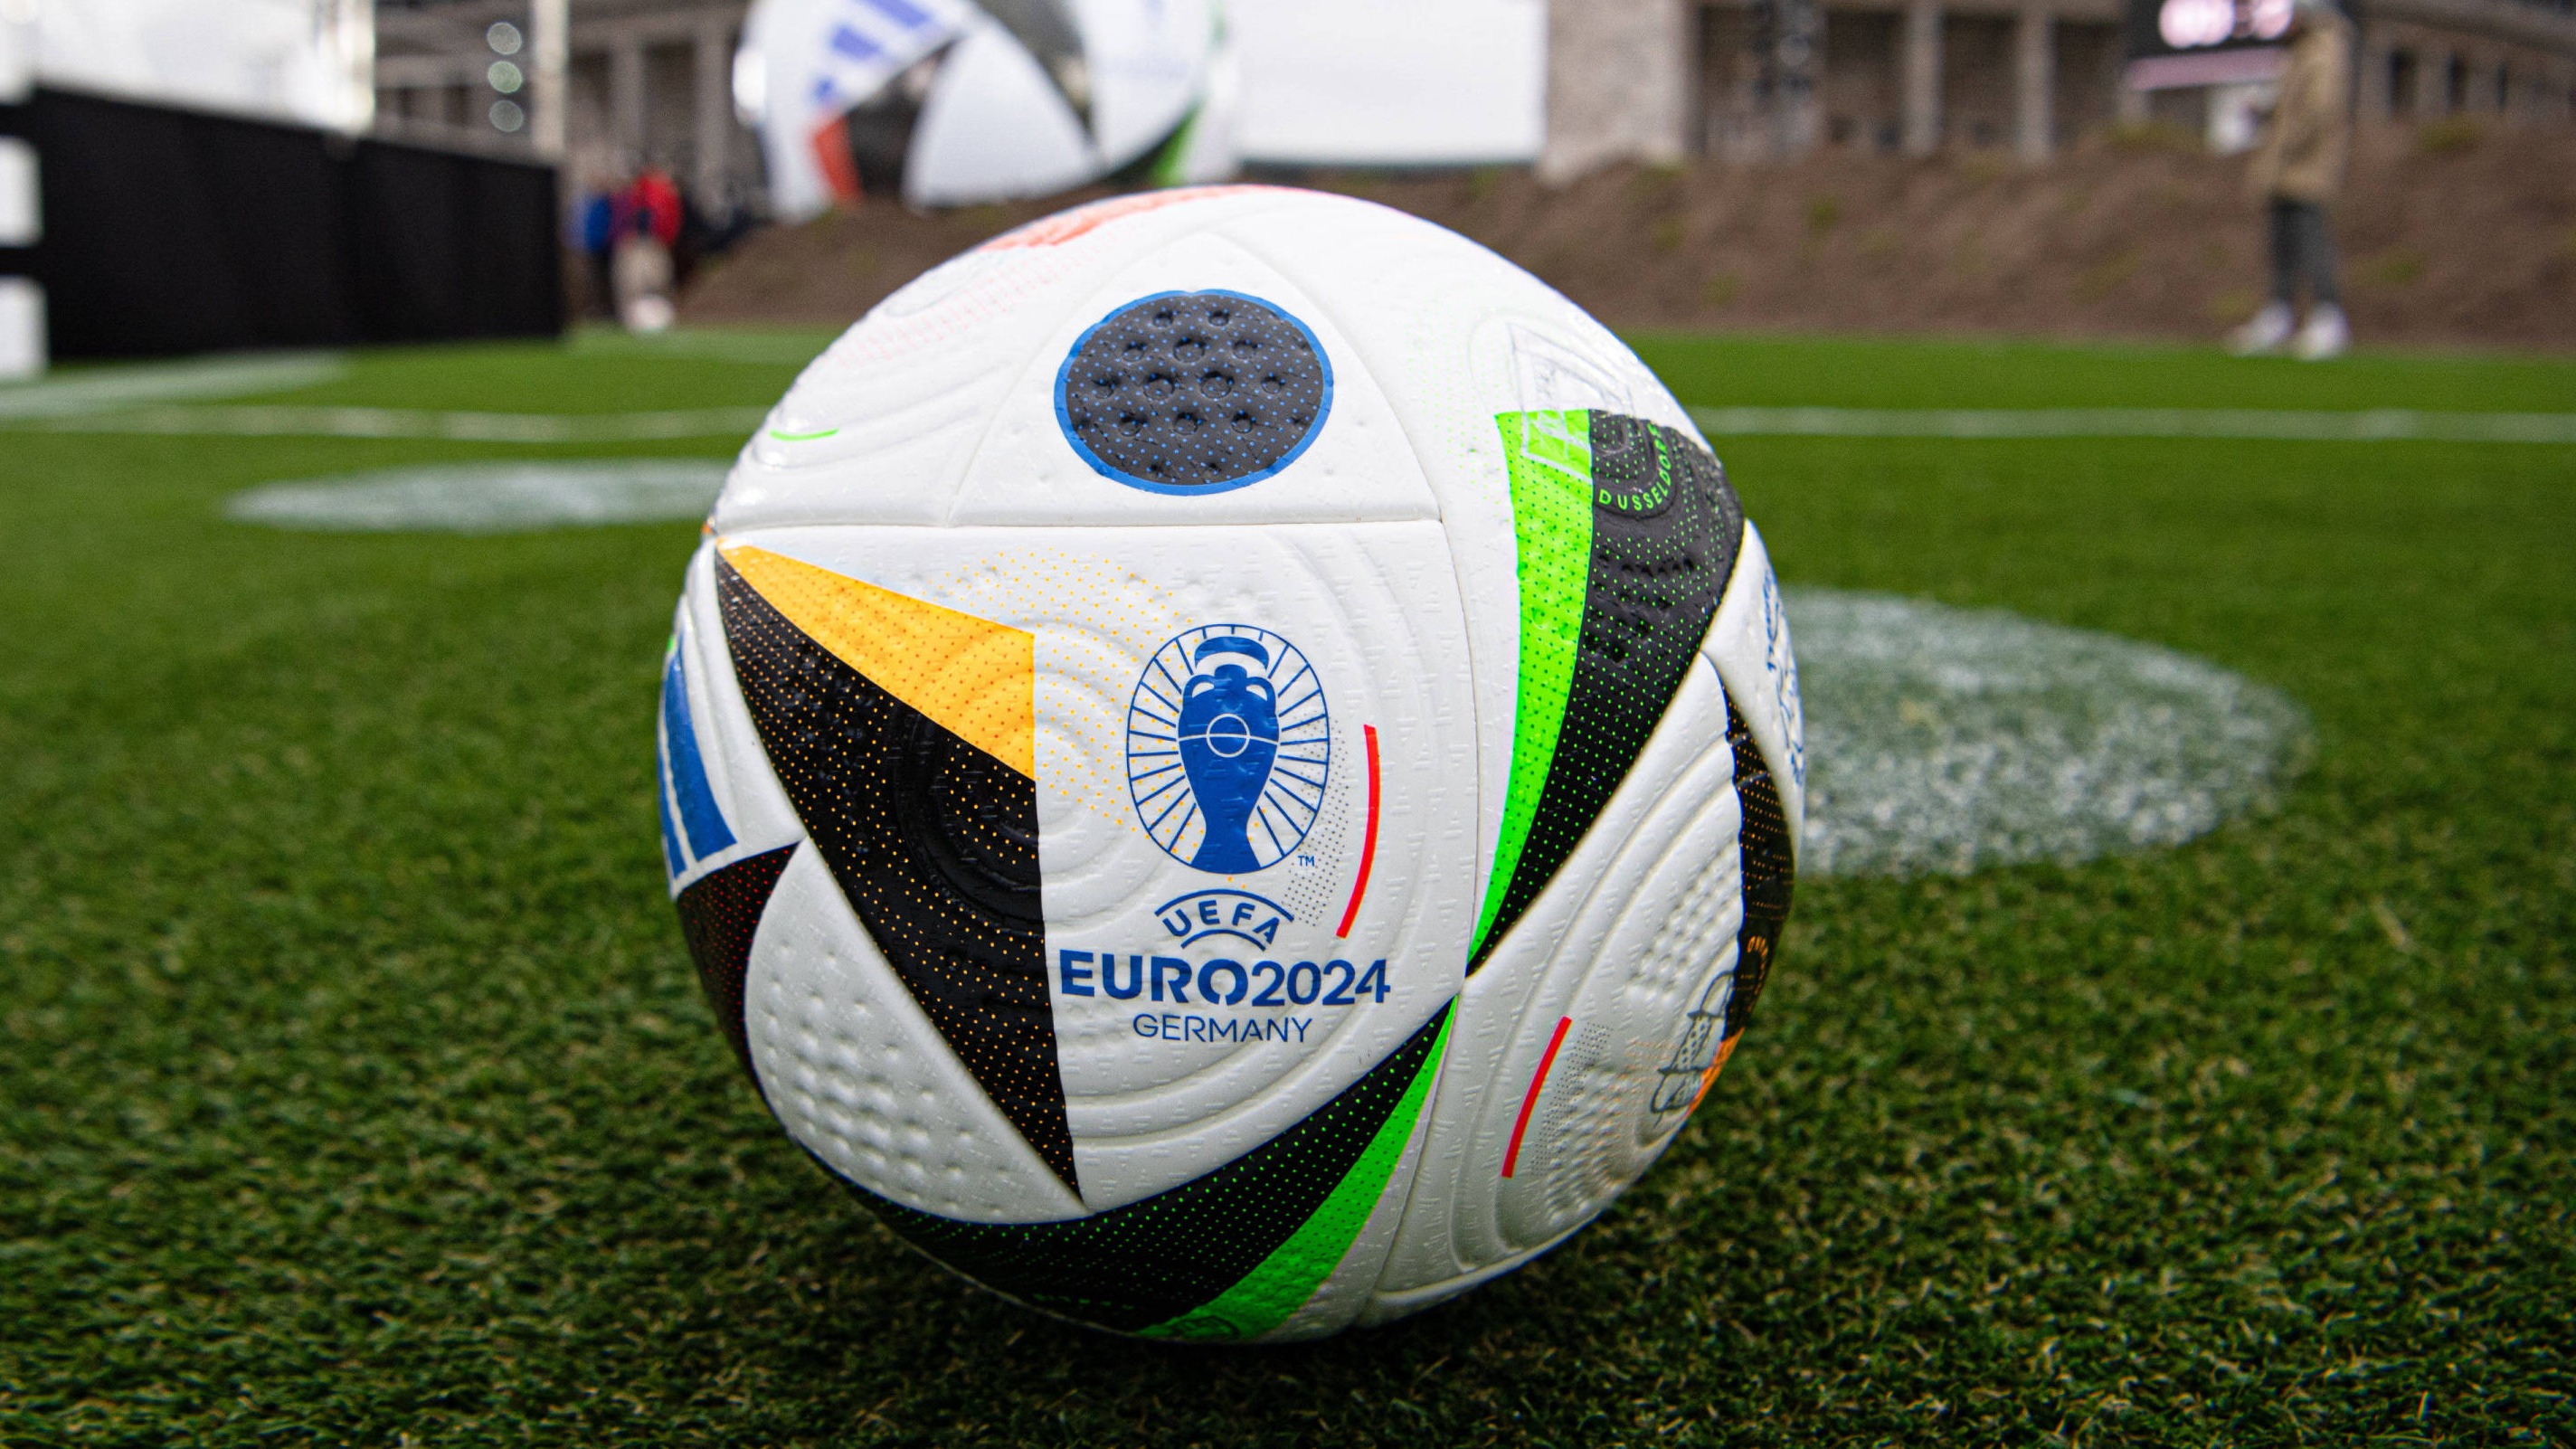 📸 Officiel : voici le ballon de l'Euro 2024 ! ⚽️